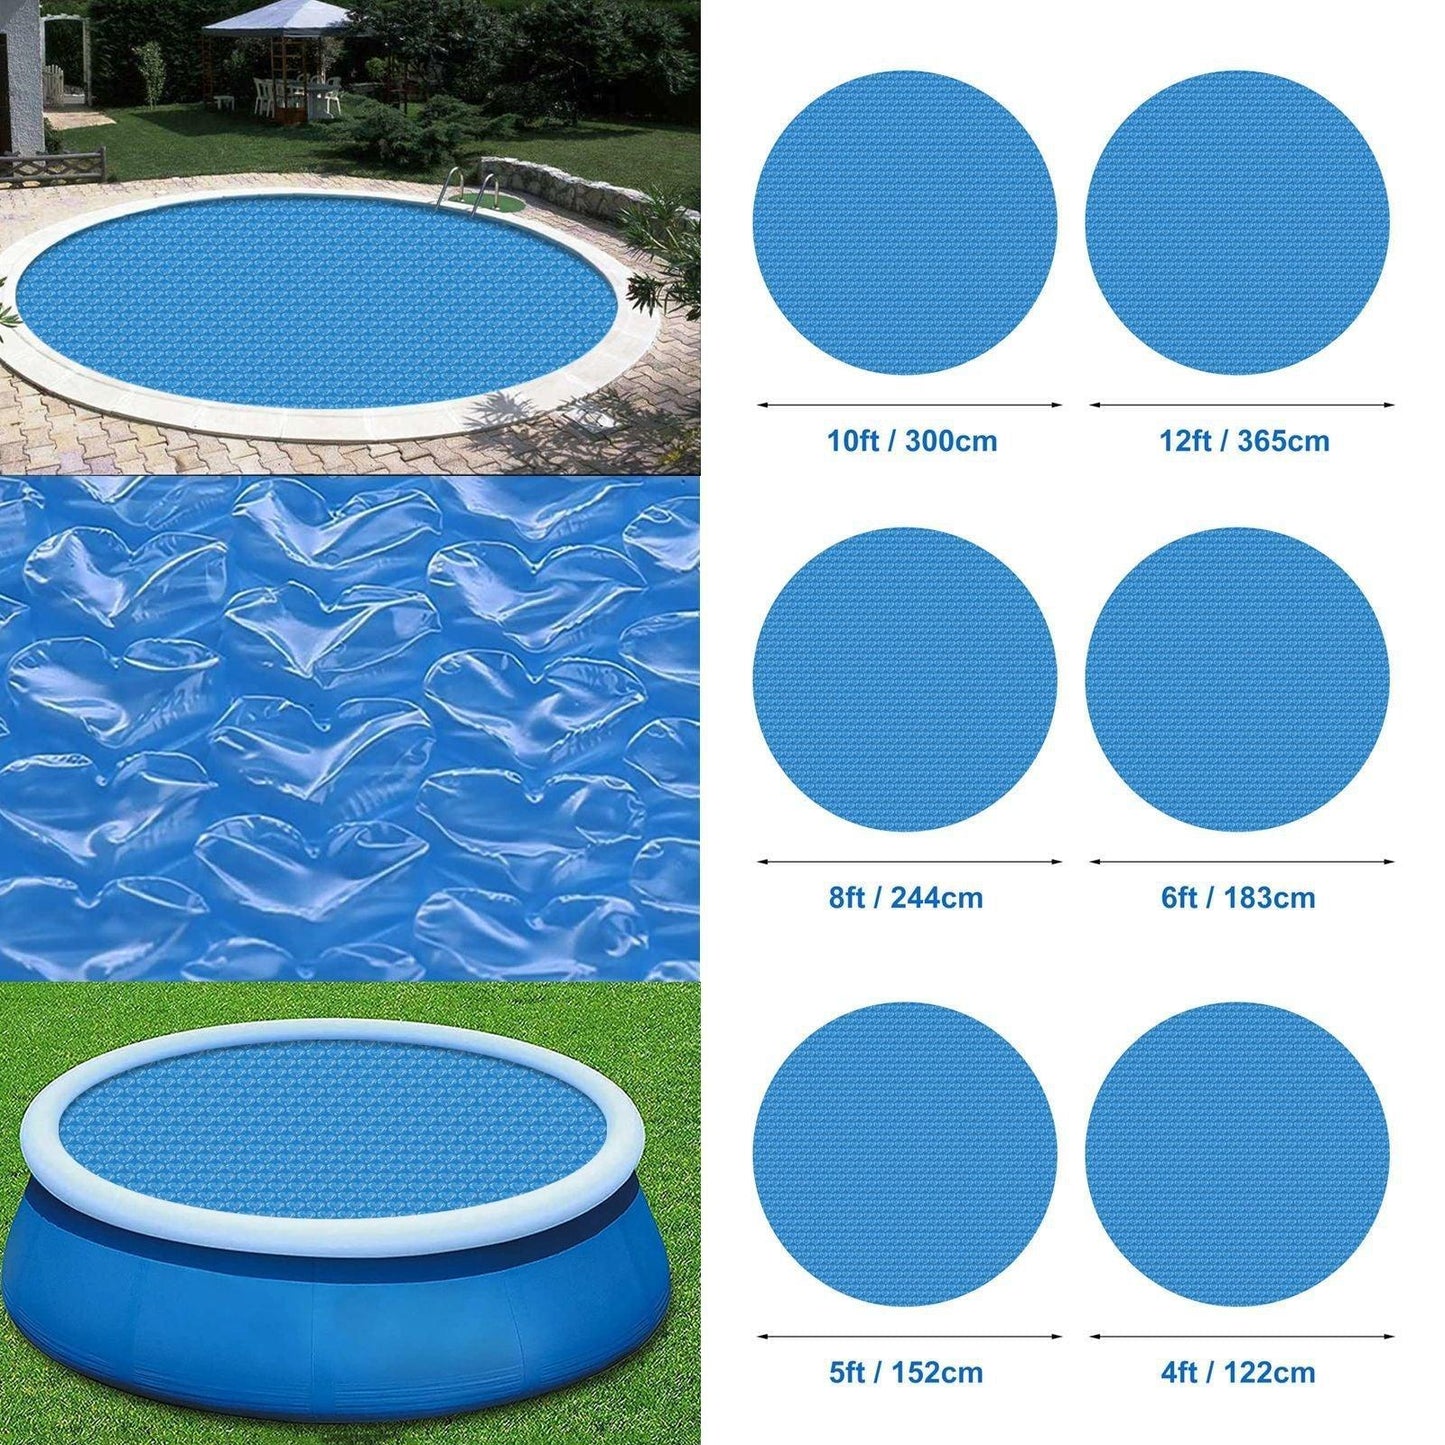 Blue Love Bubble Film Swimming Pool Cover - Silvis21 ™